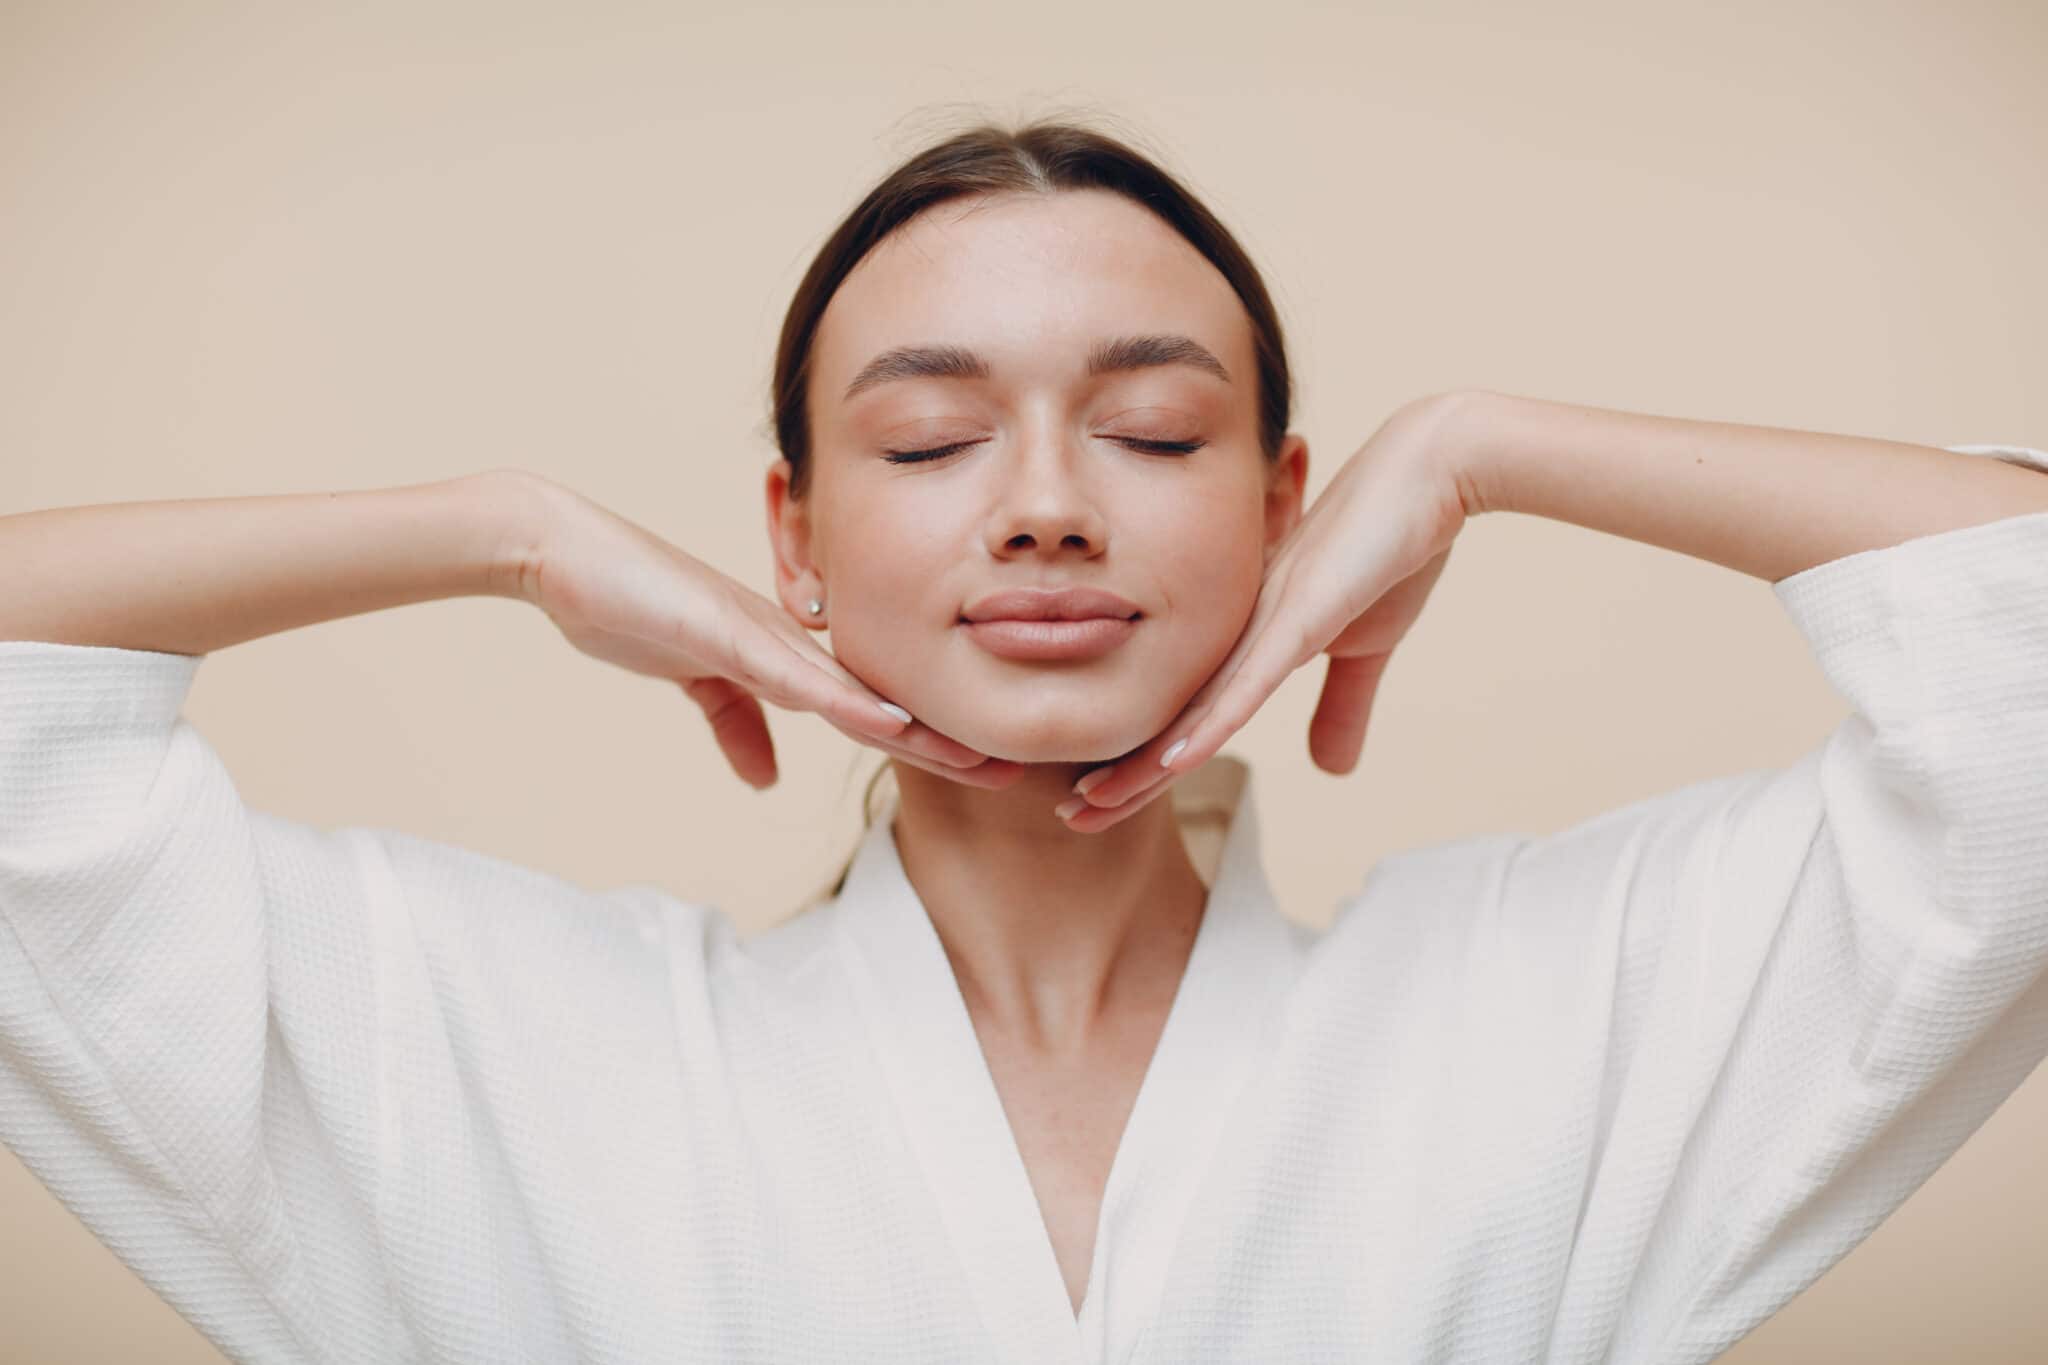 Le yoga du visage : comment faire ?